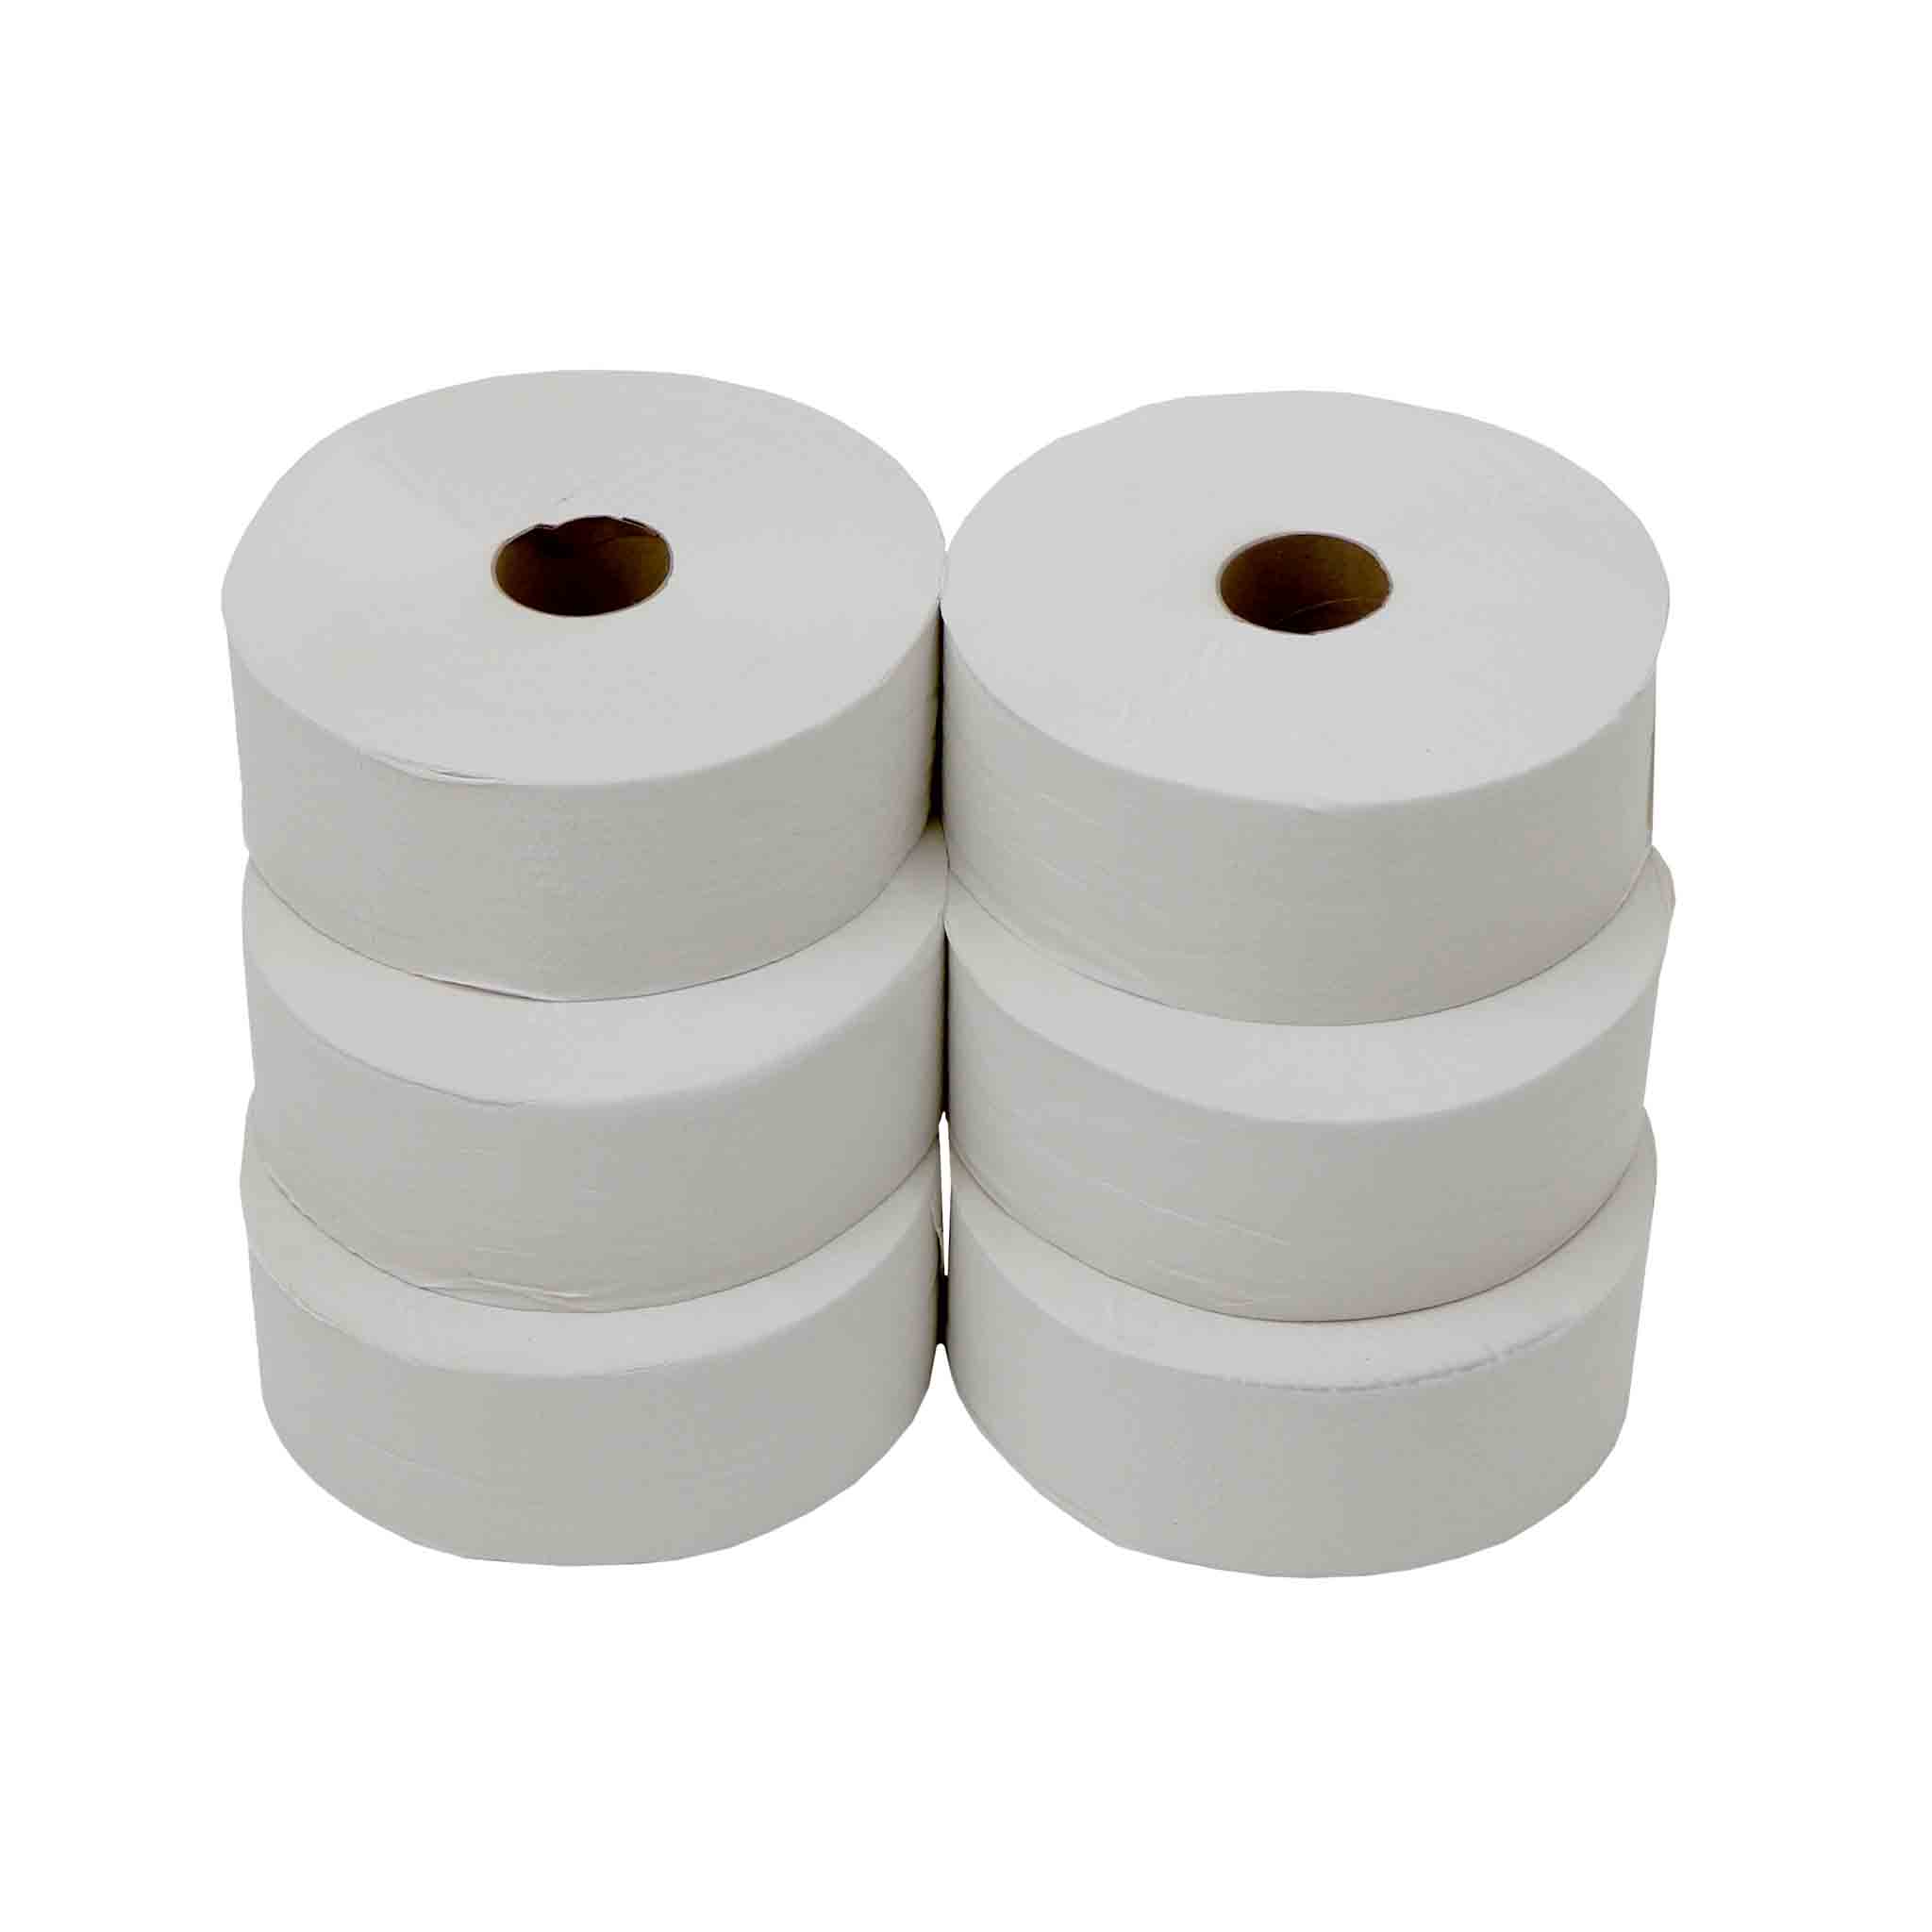 6x 2 ply White Jumbo Maxi Toilet Roll Paper Tissue for Dispenser